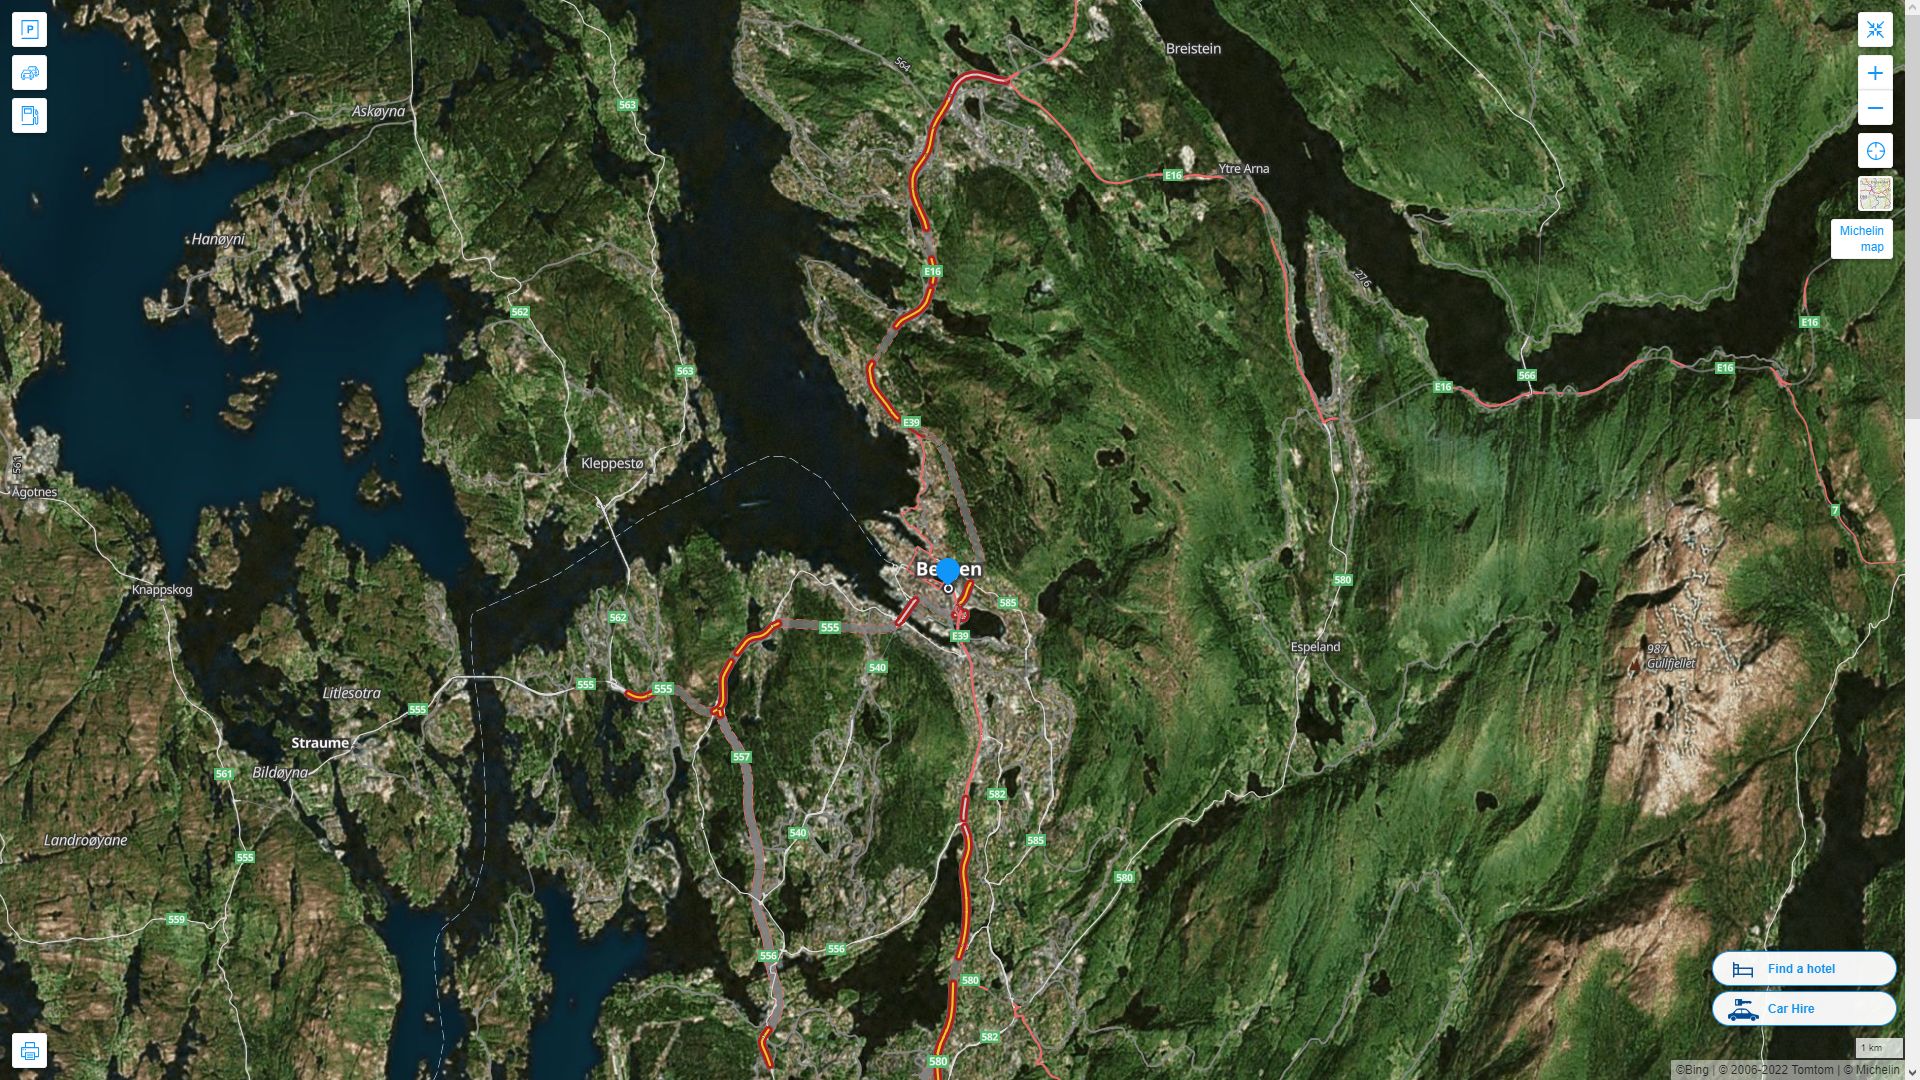 Bergen Norvege Autoroute et carte routiere avec vue satellite